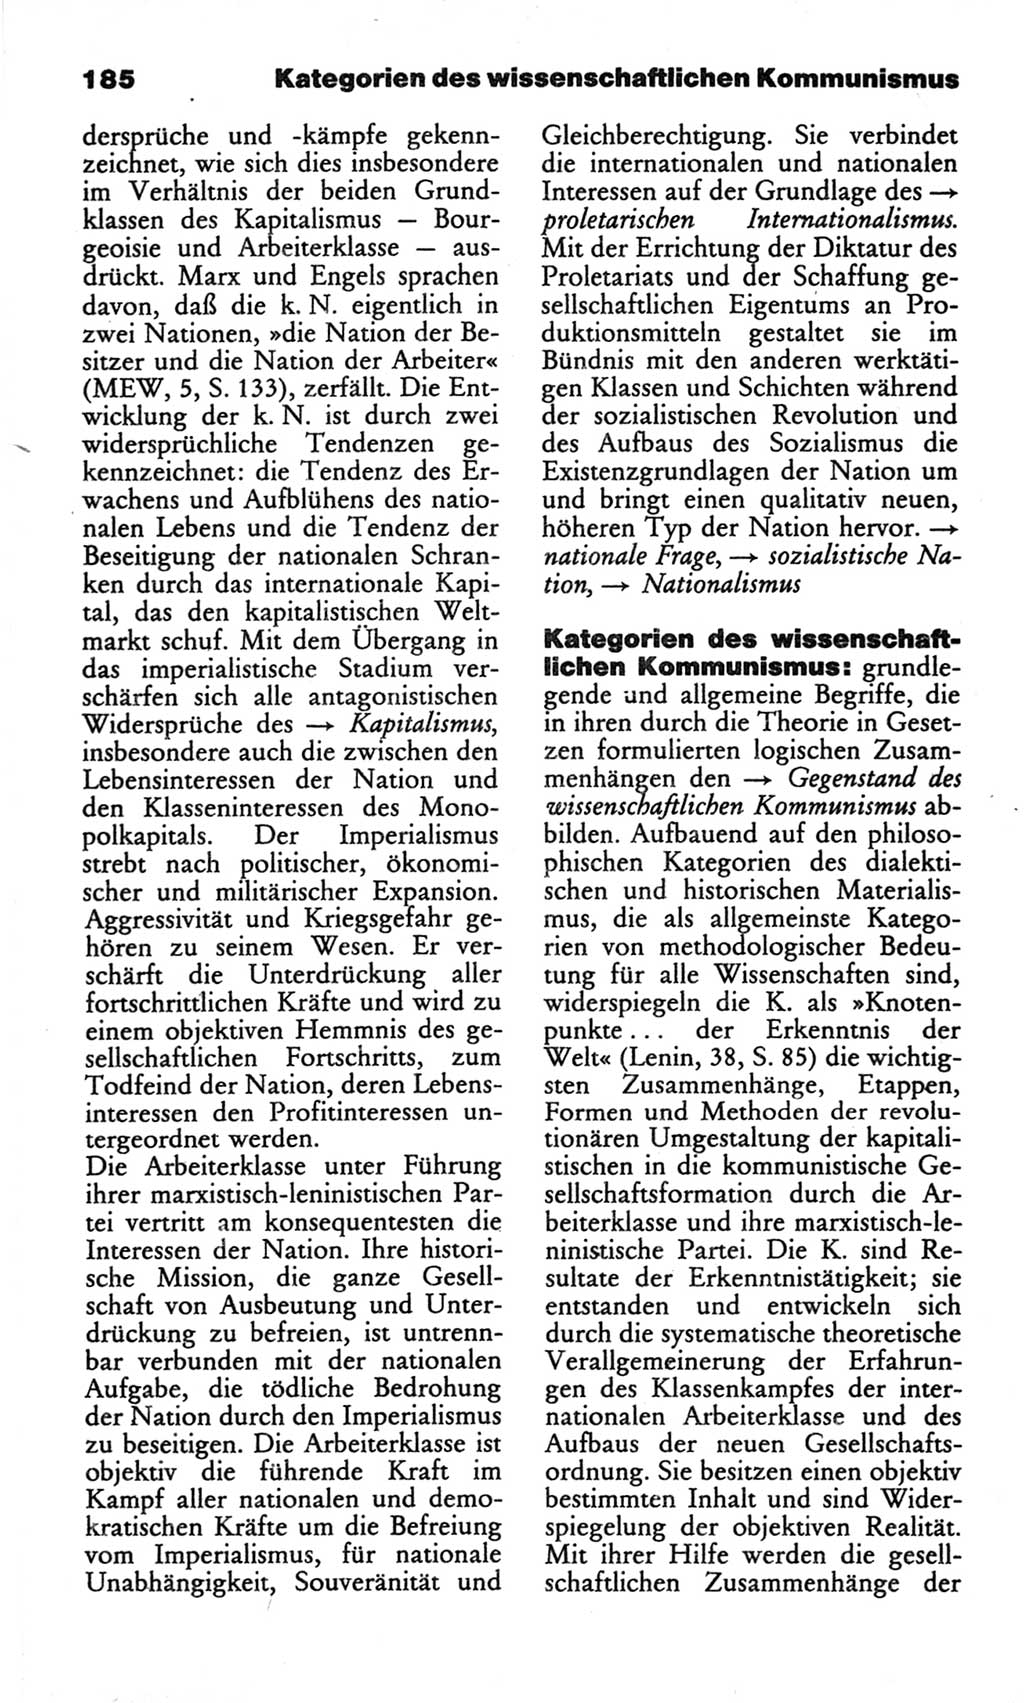 Wörterbuch des wissenschaftlichen Kommunismus [Deutsche Demokratische Republik (DDR)] 1982, Seite 185 (Wb. wiss. Komm. DDR 1982, S. 185)